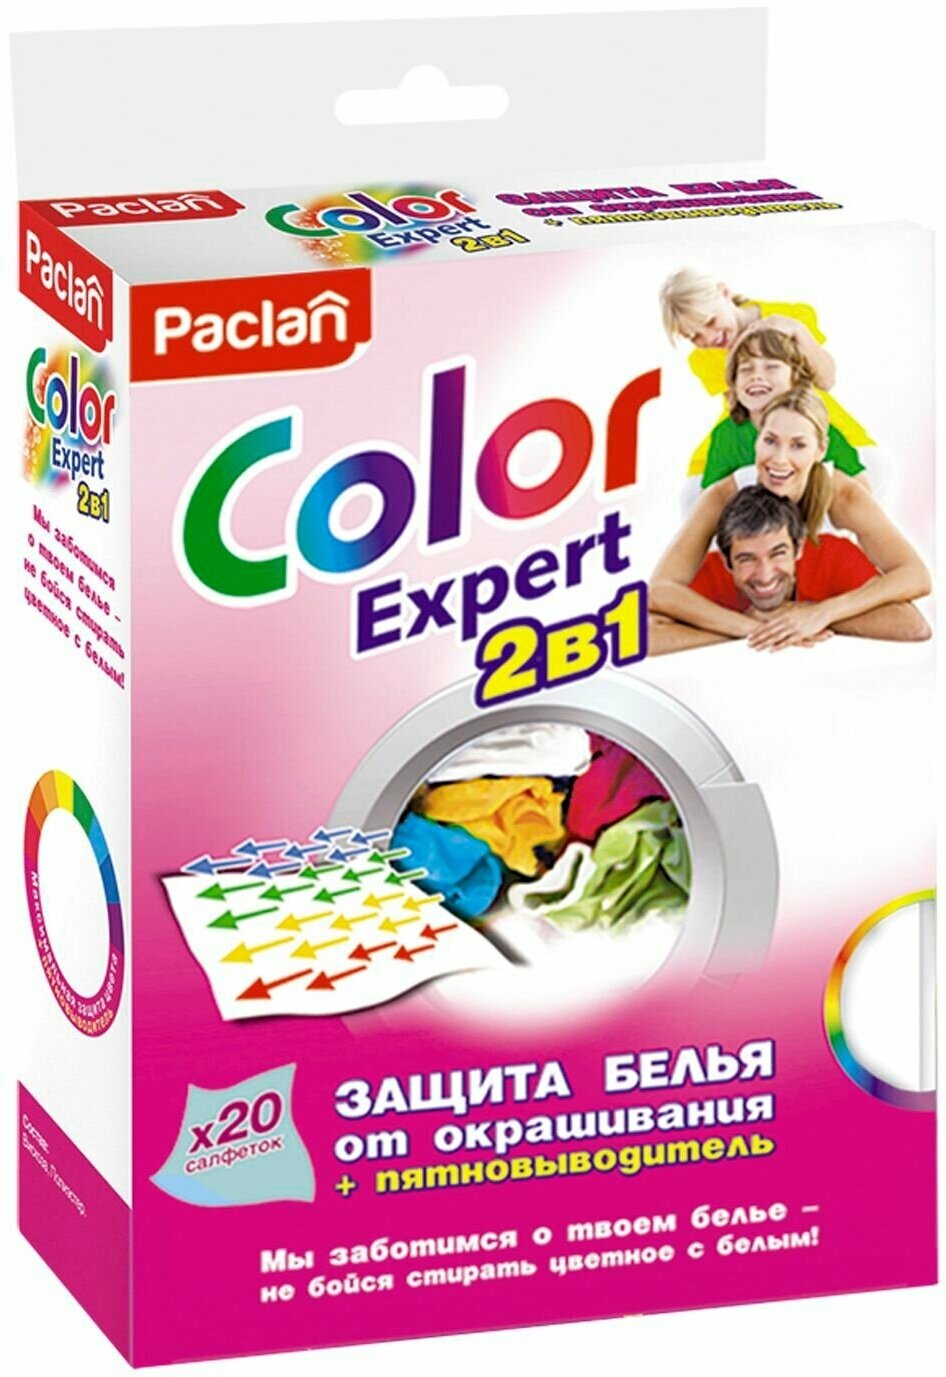 Салфетки от окрашив. белья+пятновыводитель, PACLAN Color Expert 2в1 20шт.